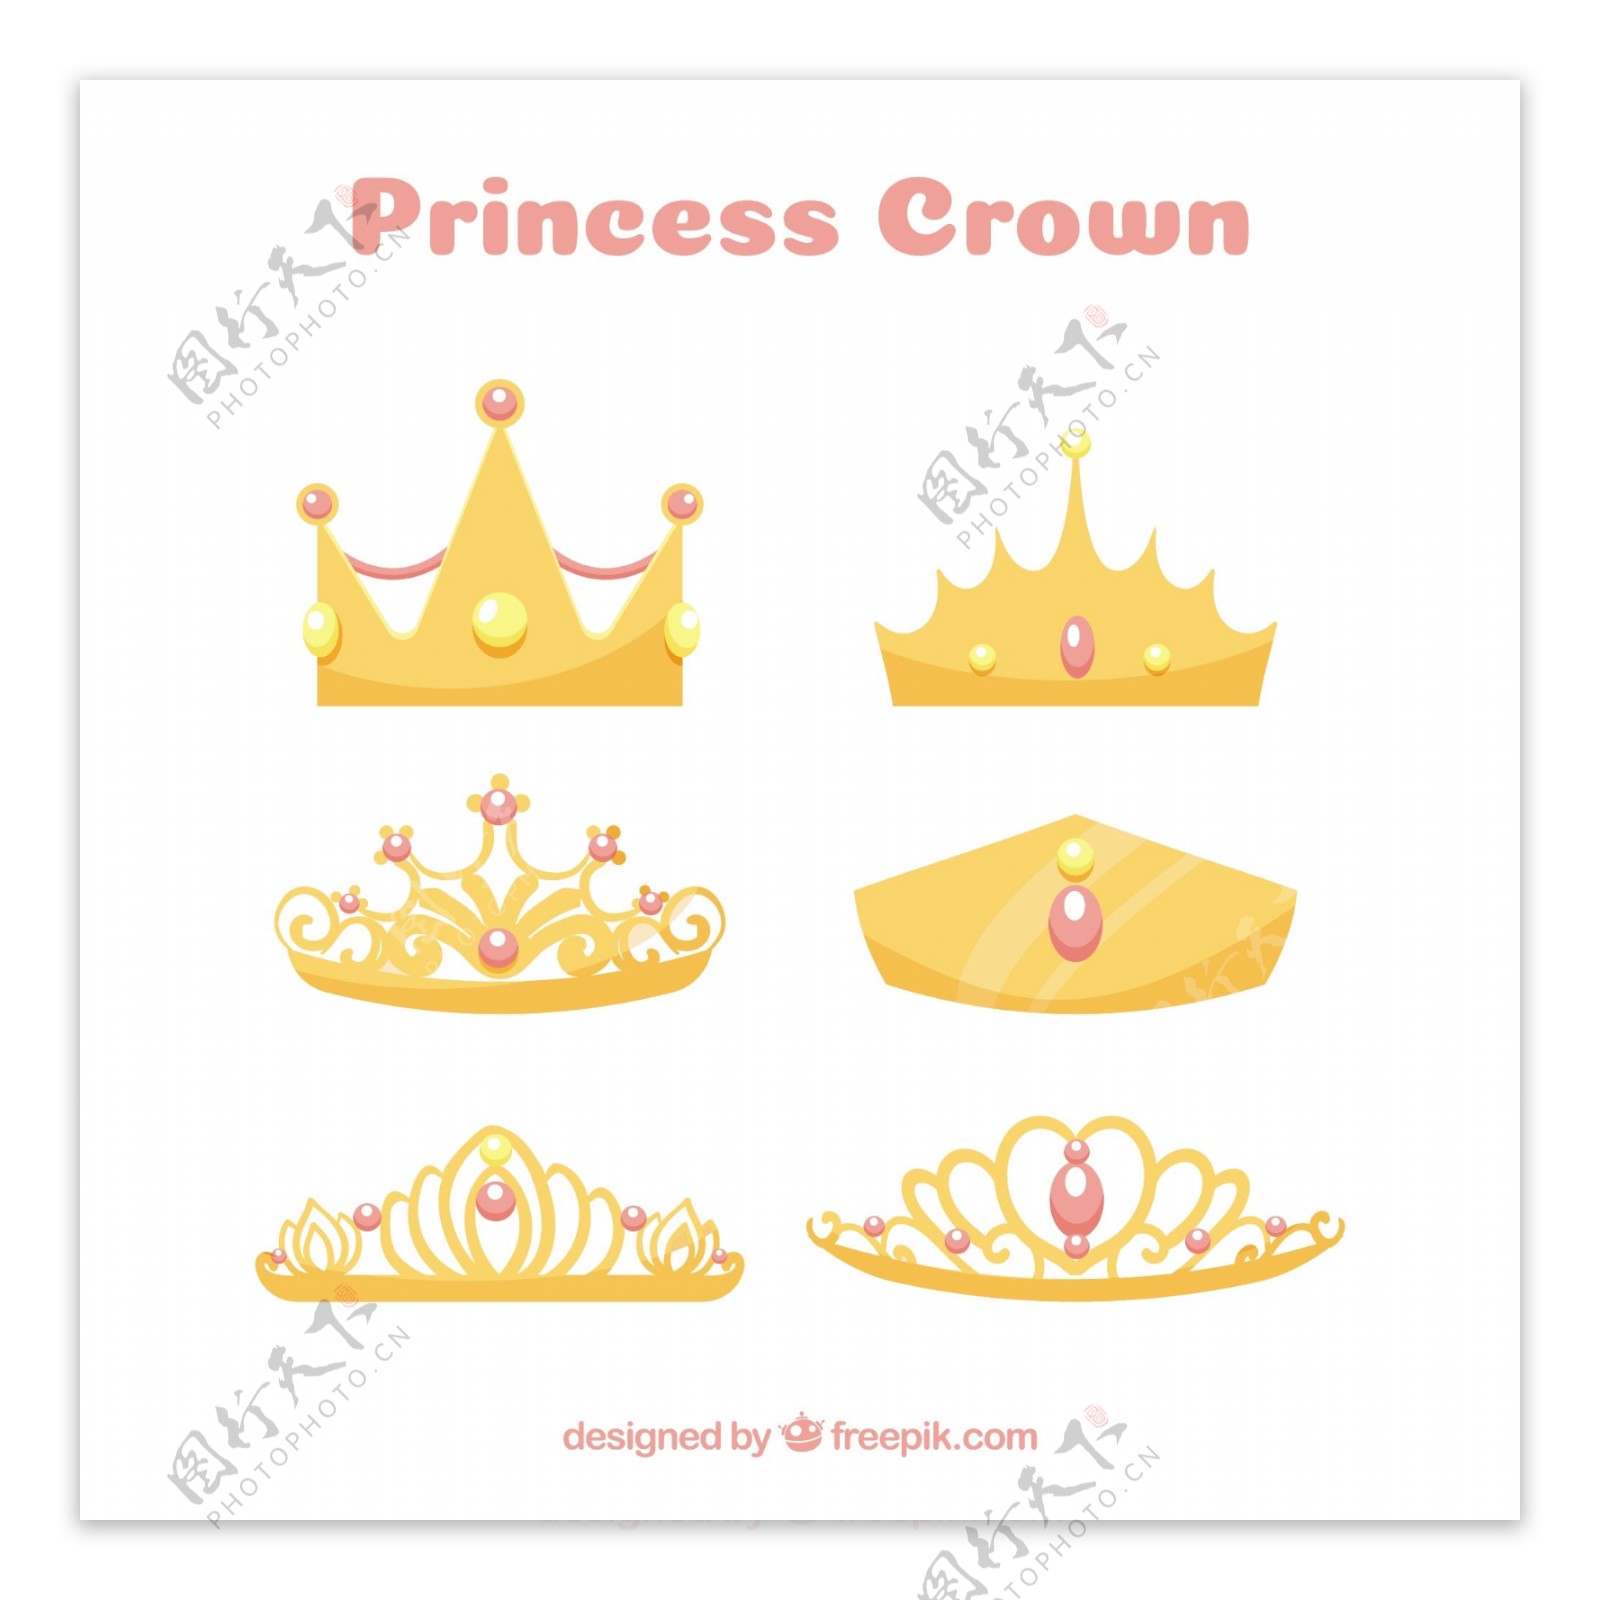 镶嵌红色珠宝的公主王冠矢量素材